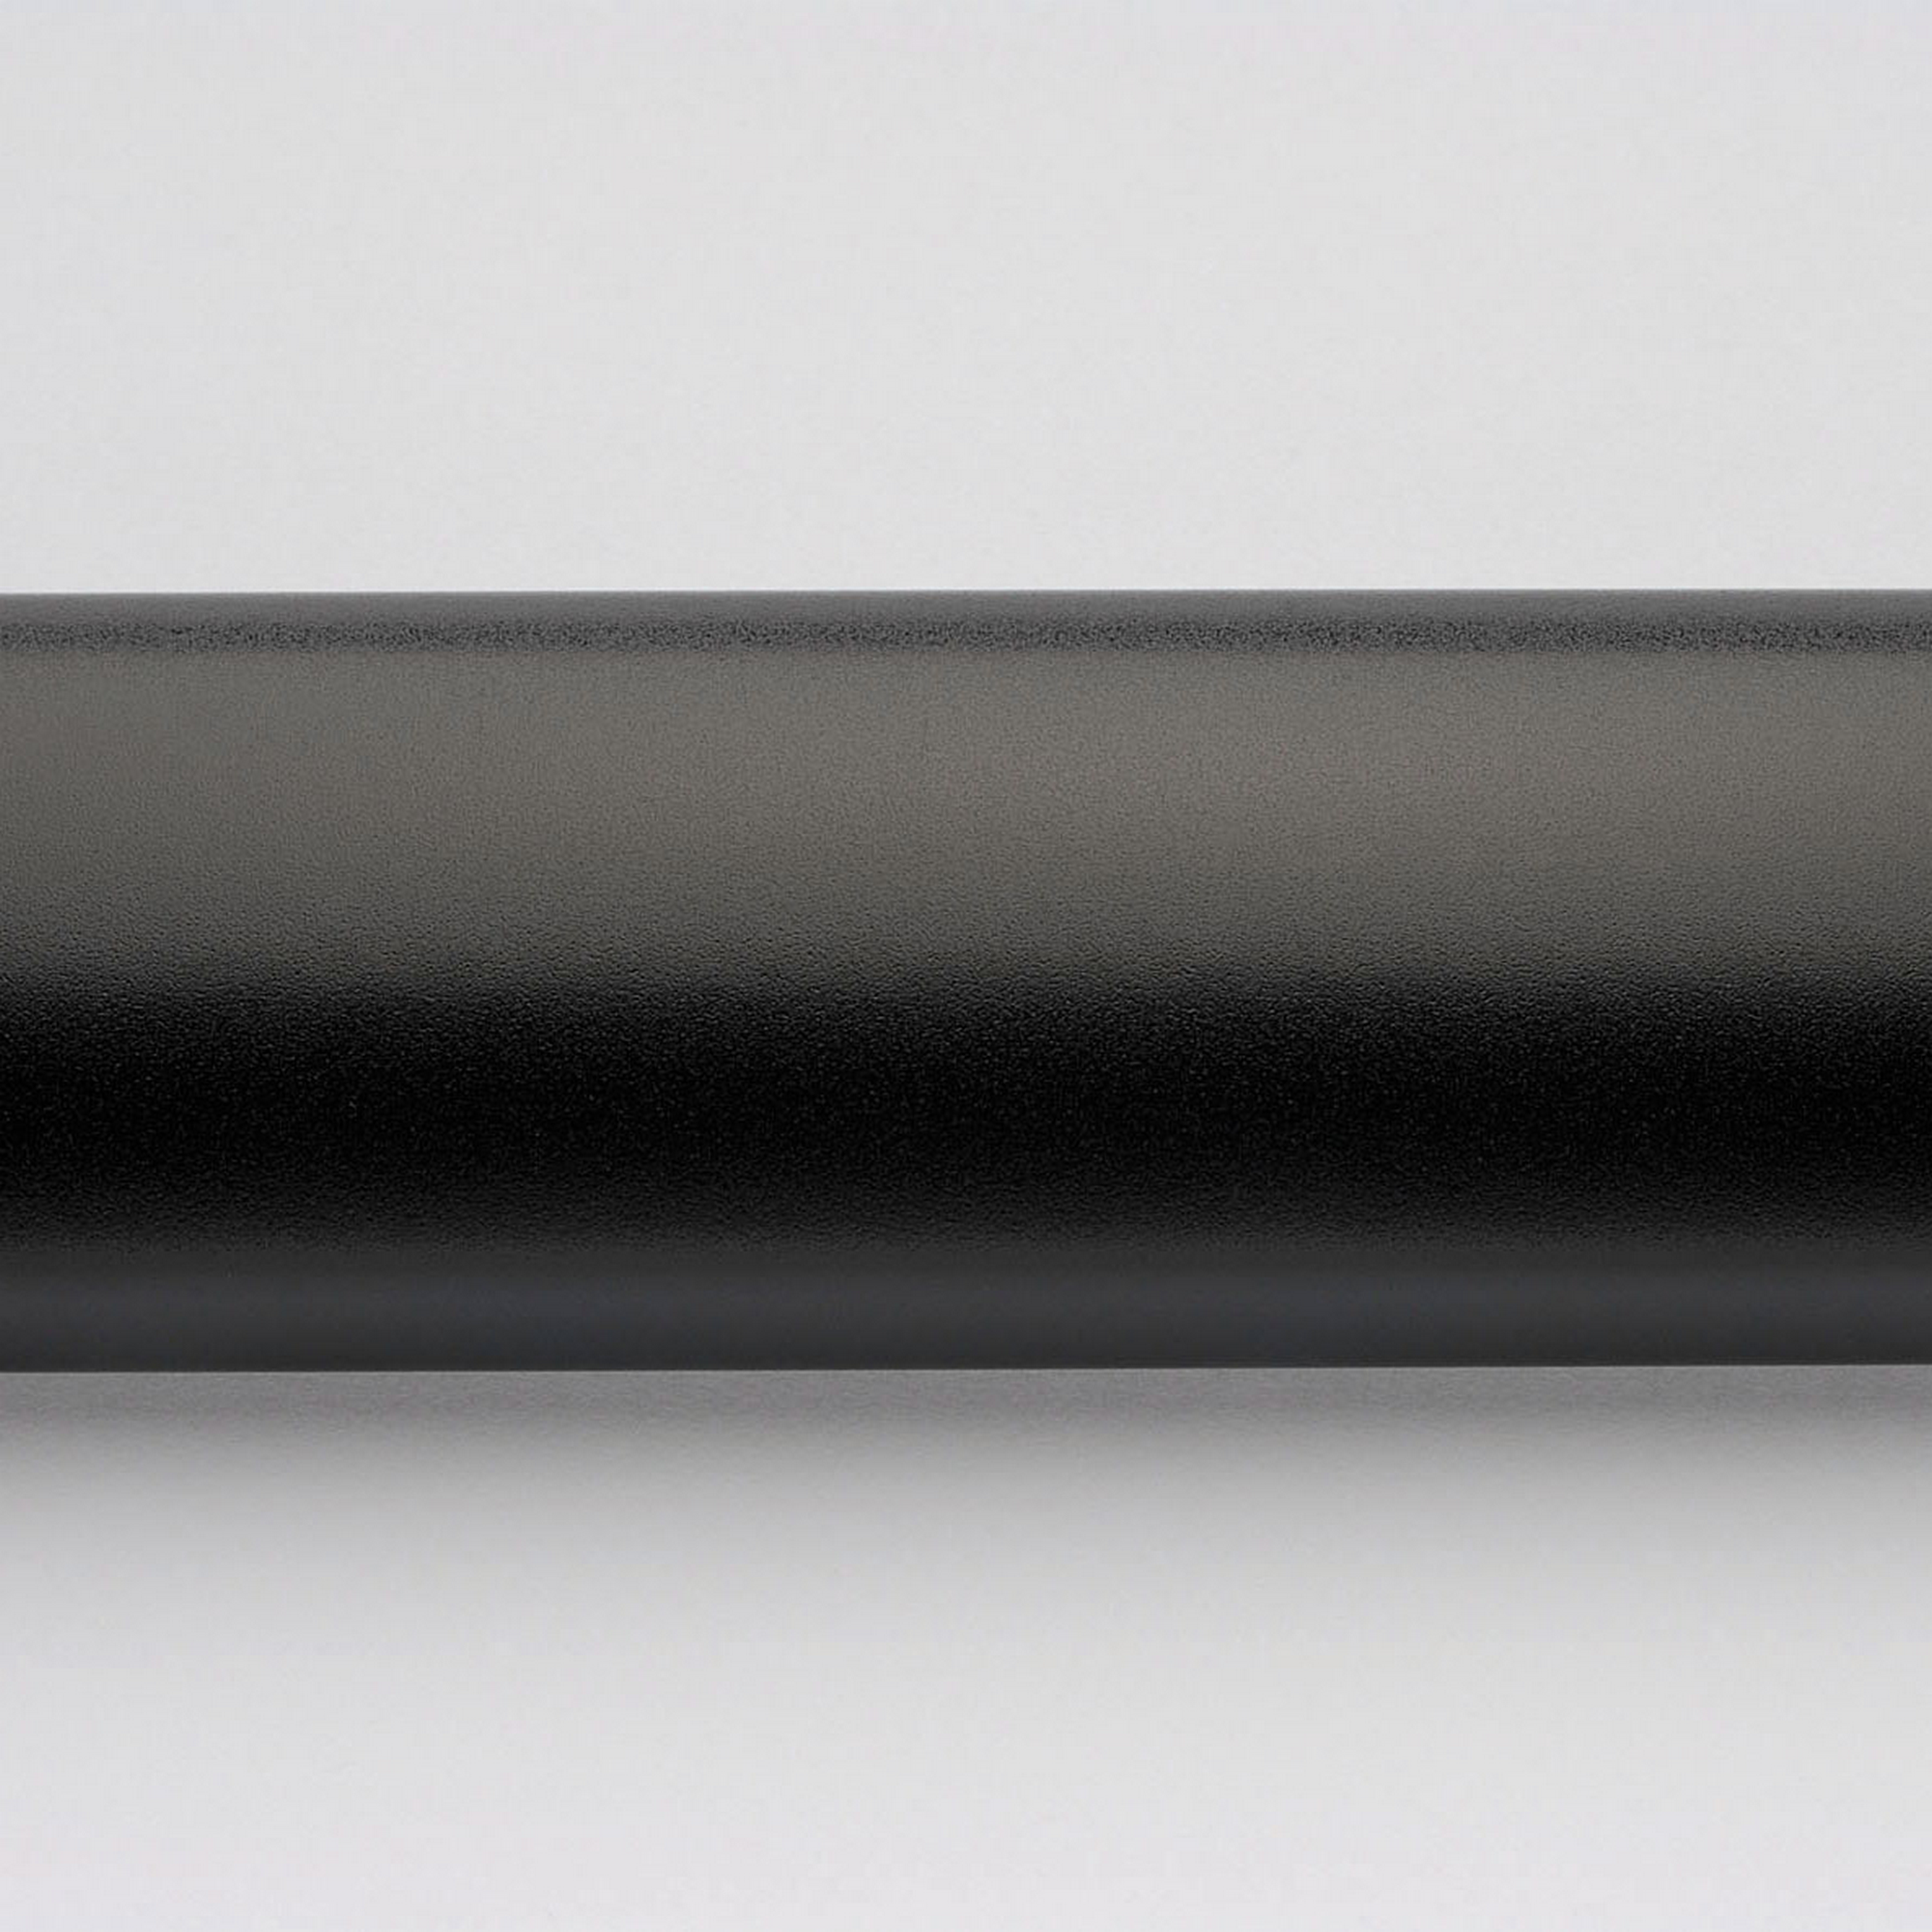 Duschwand 'Entra' mit beweglichem Eckelement, links, teilgerahmt, schwarz-matt, 140 x 200 cm + product picture